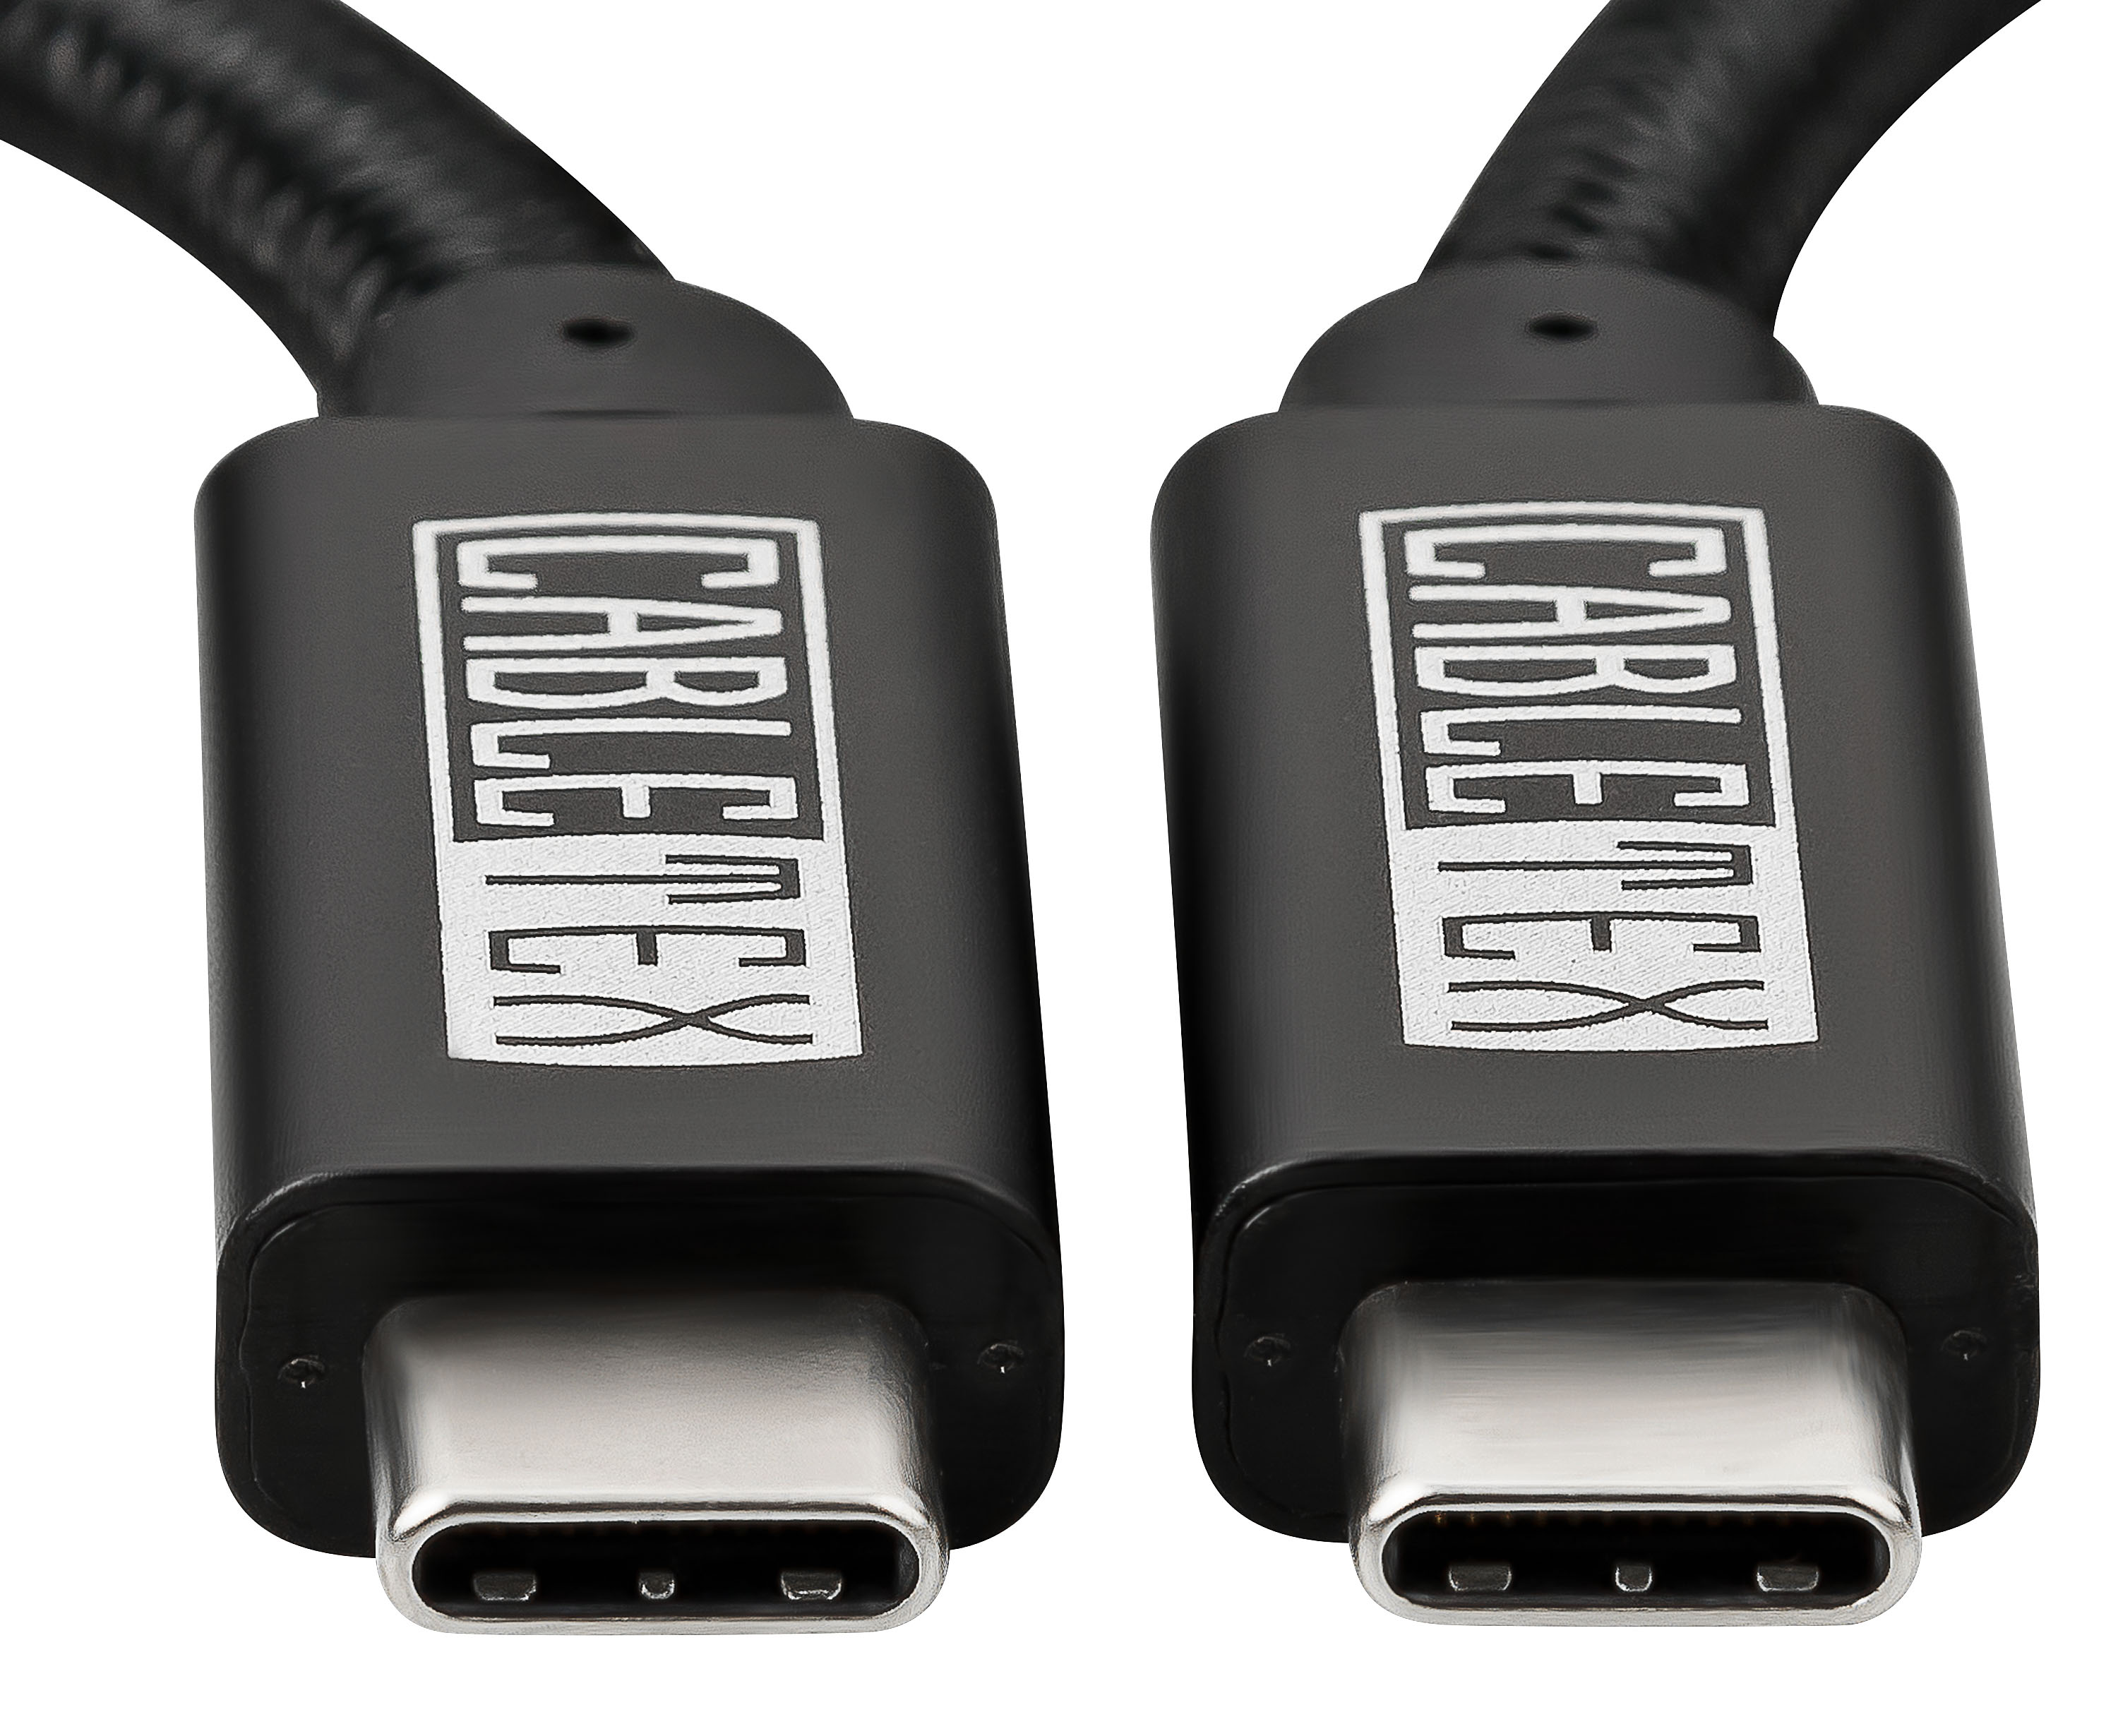 CABLETEX USB-C Kabel | | USB Schwarz 100W Ladekabel Kabel, Länge 3m